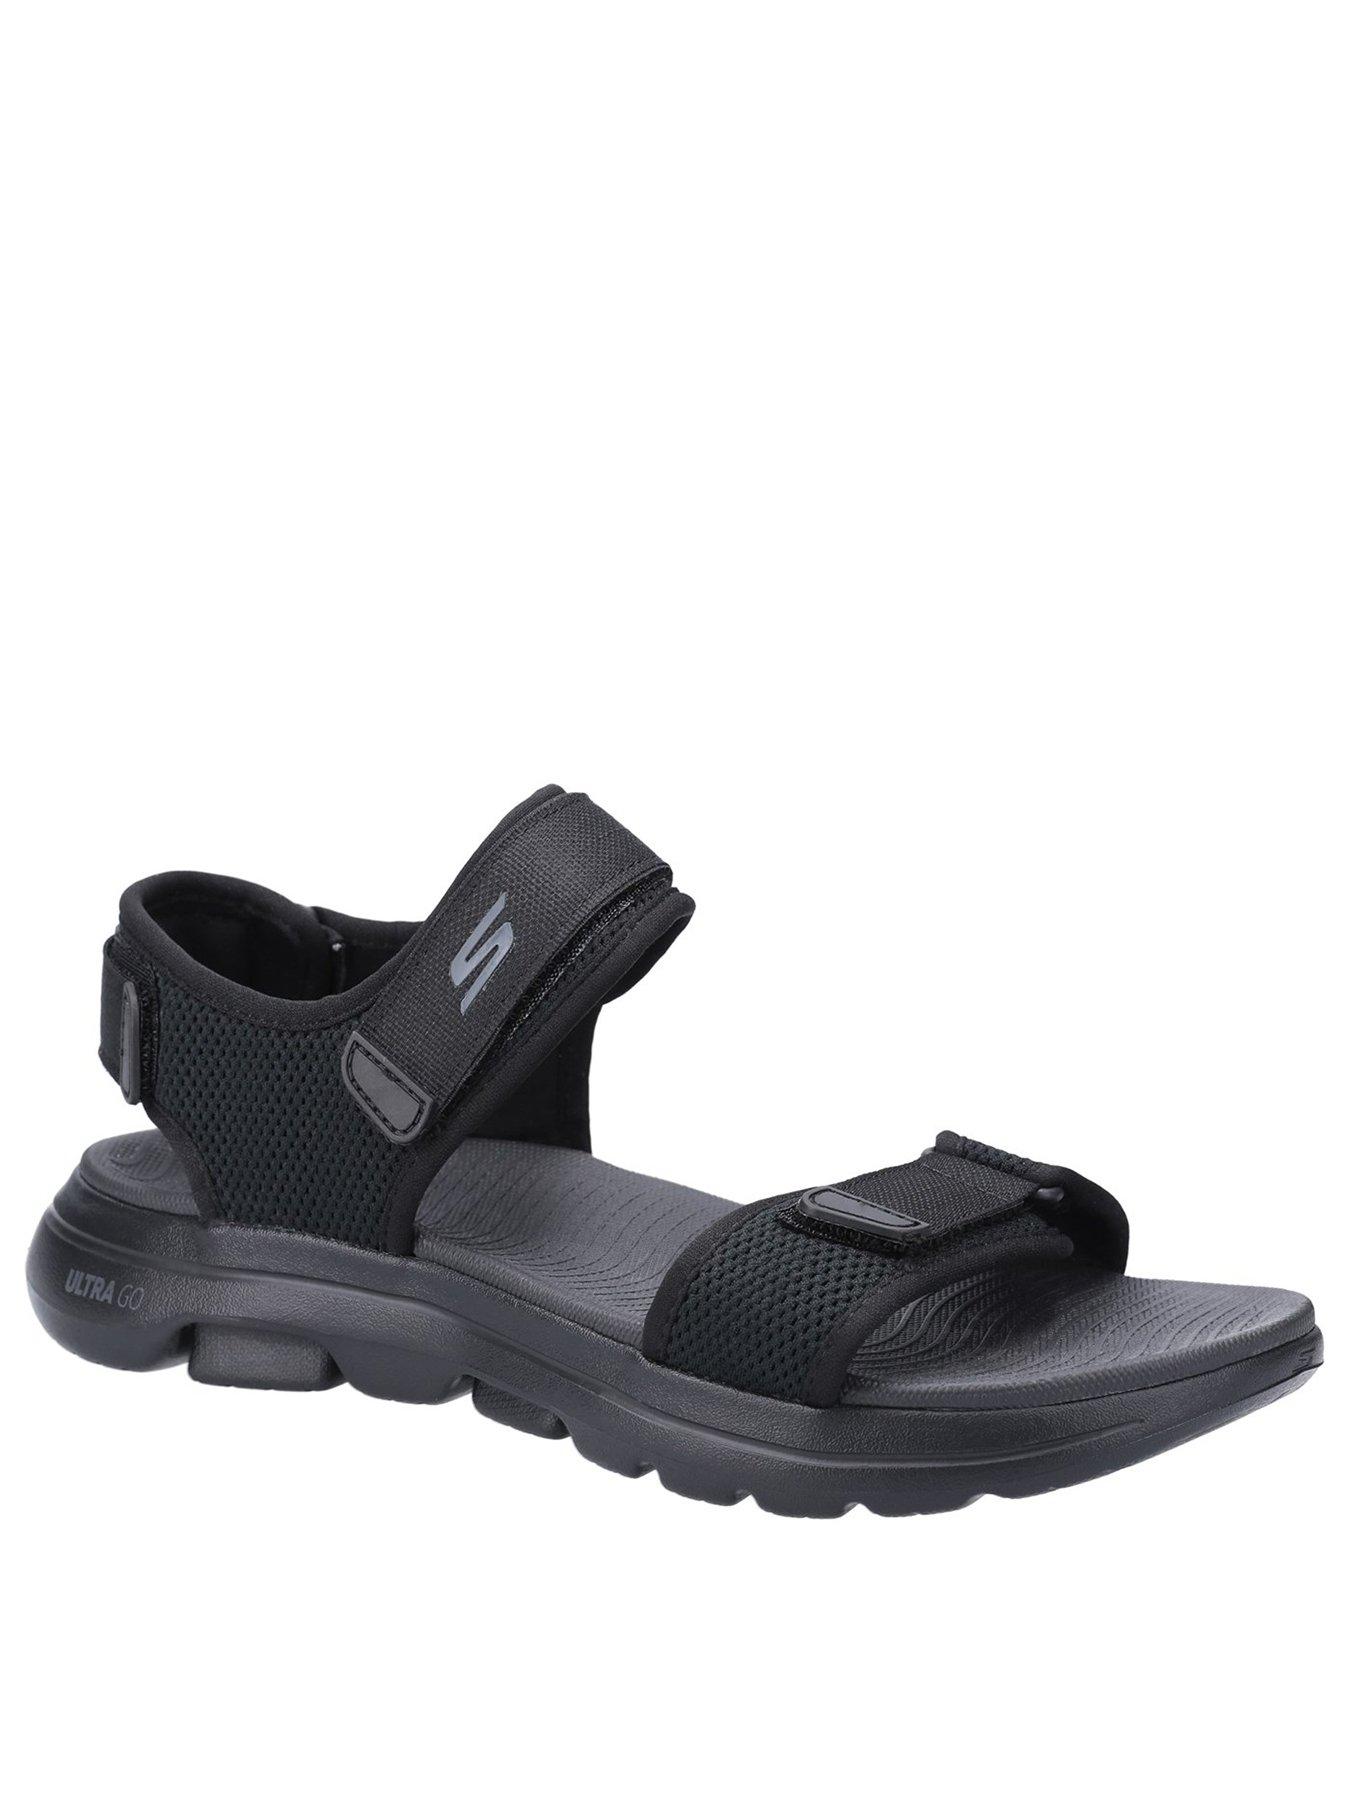 skechers gowalk sandals